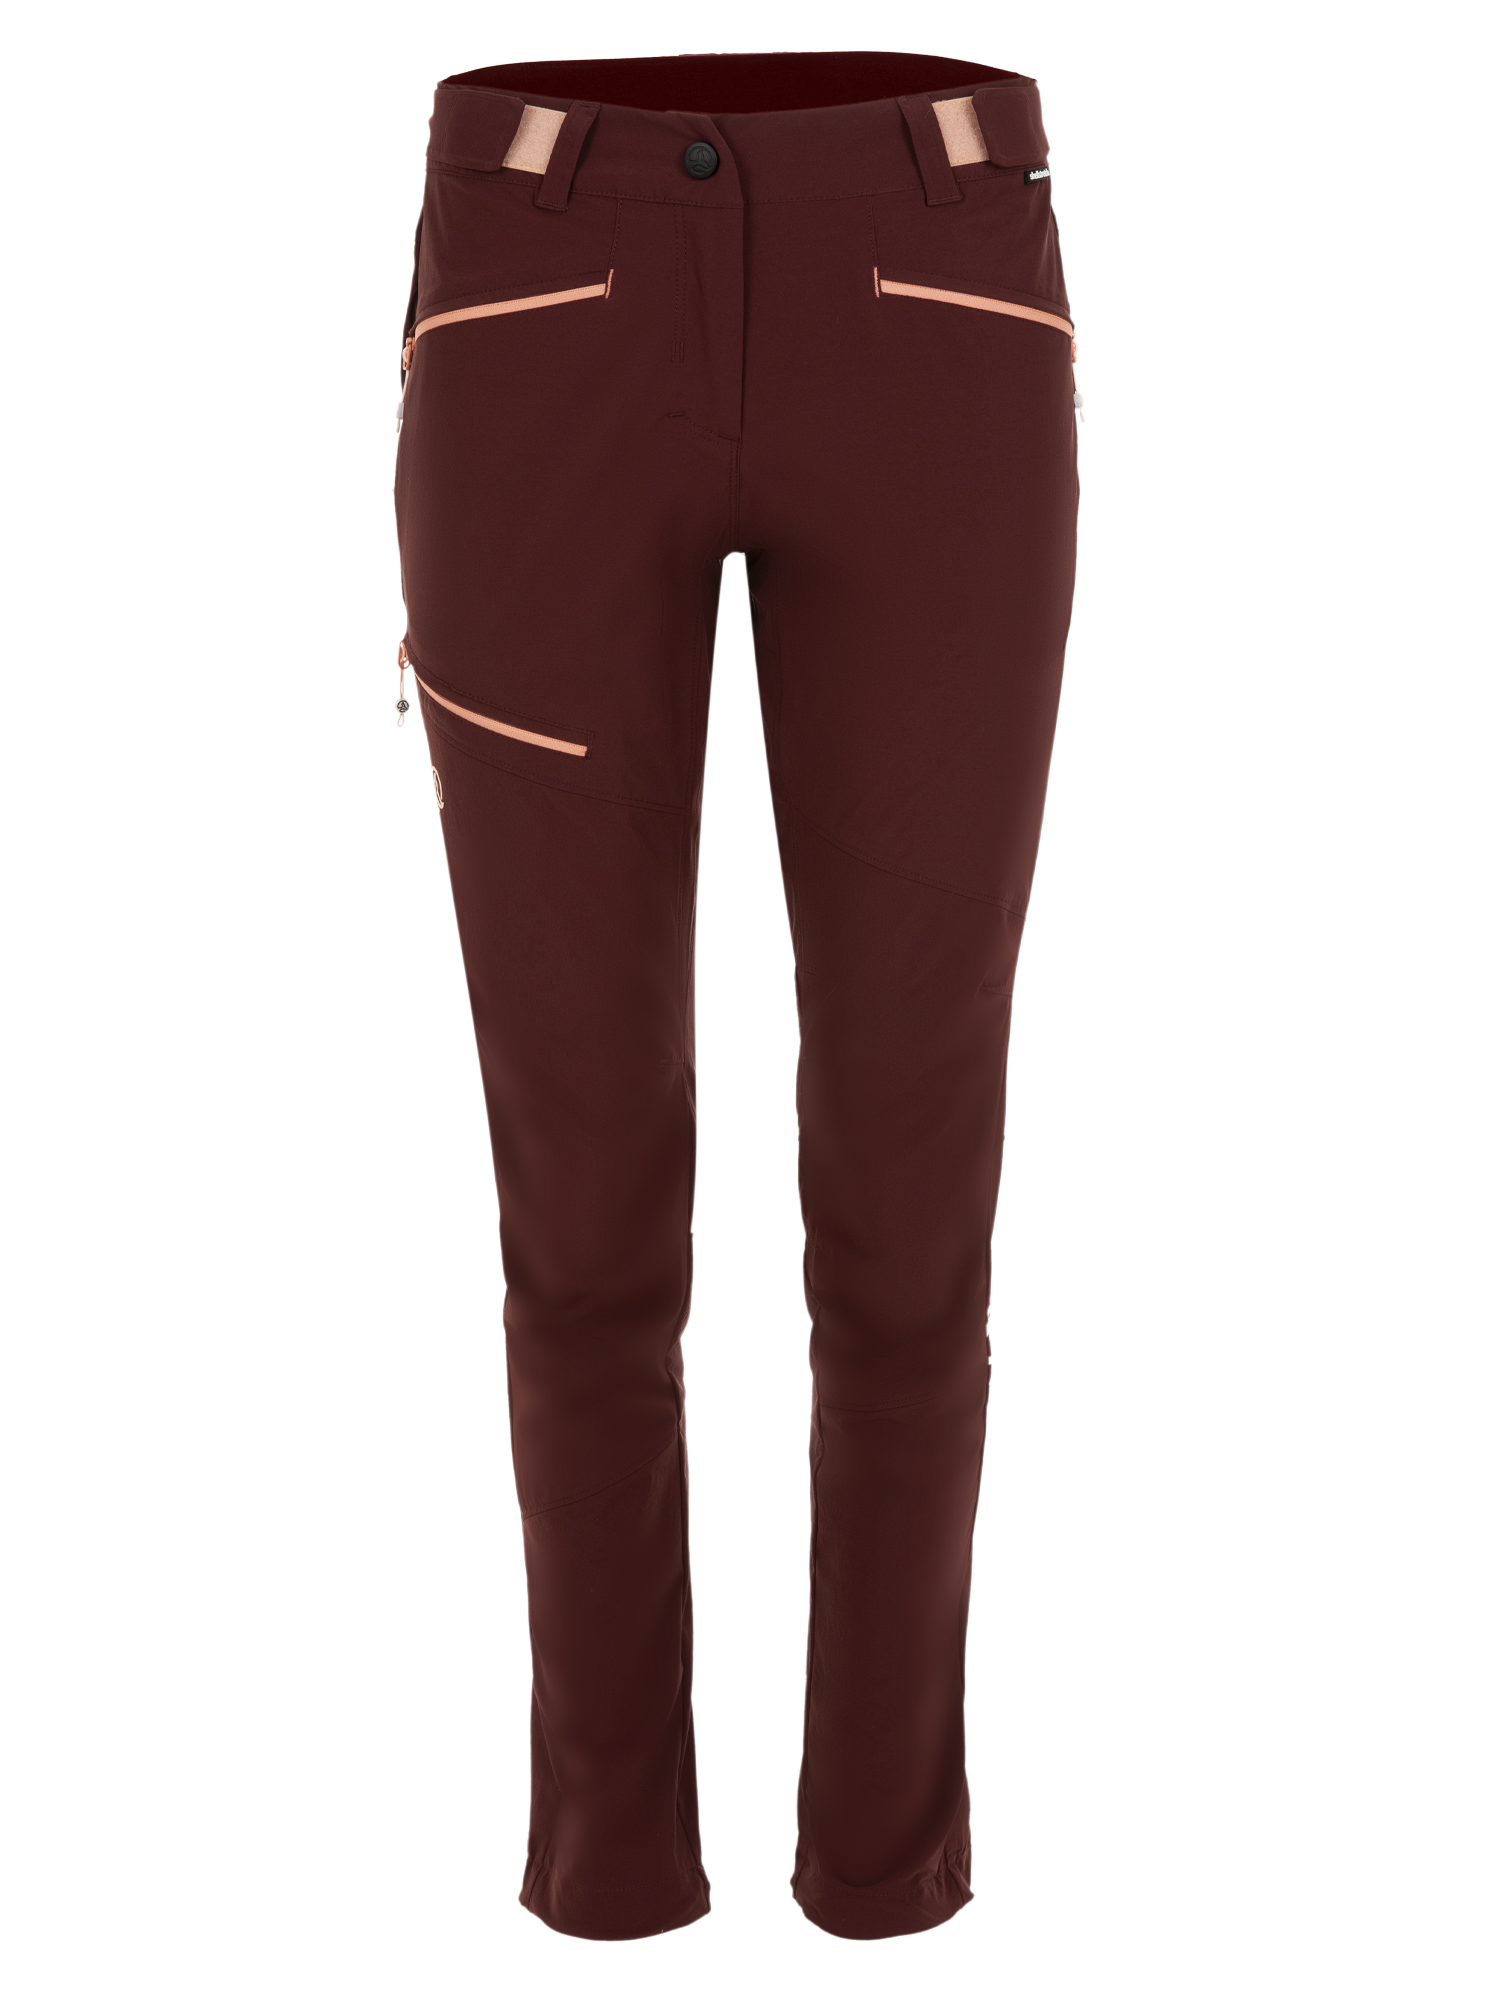 Спортивные брюки женские Ternua Rotar Pt W бордовые 2XL